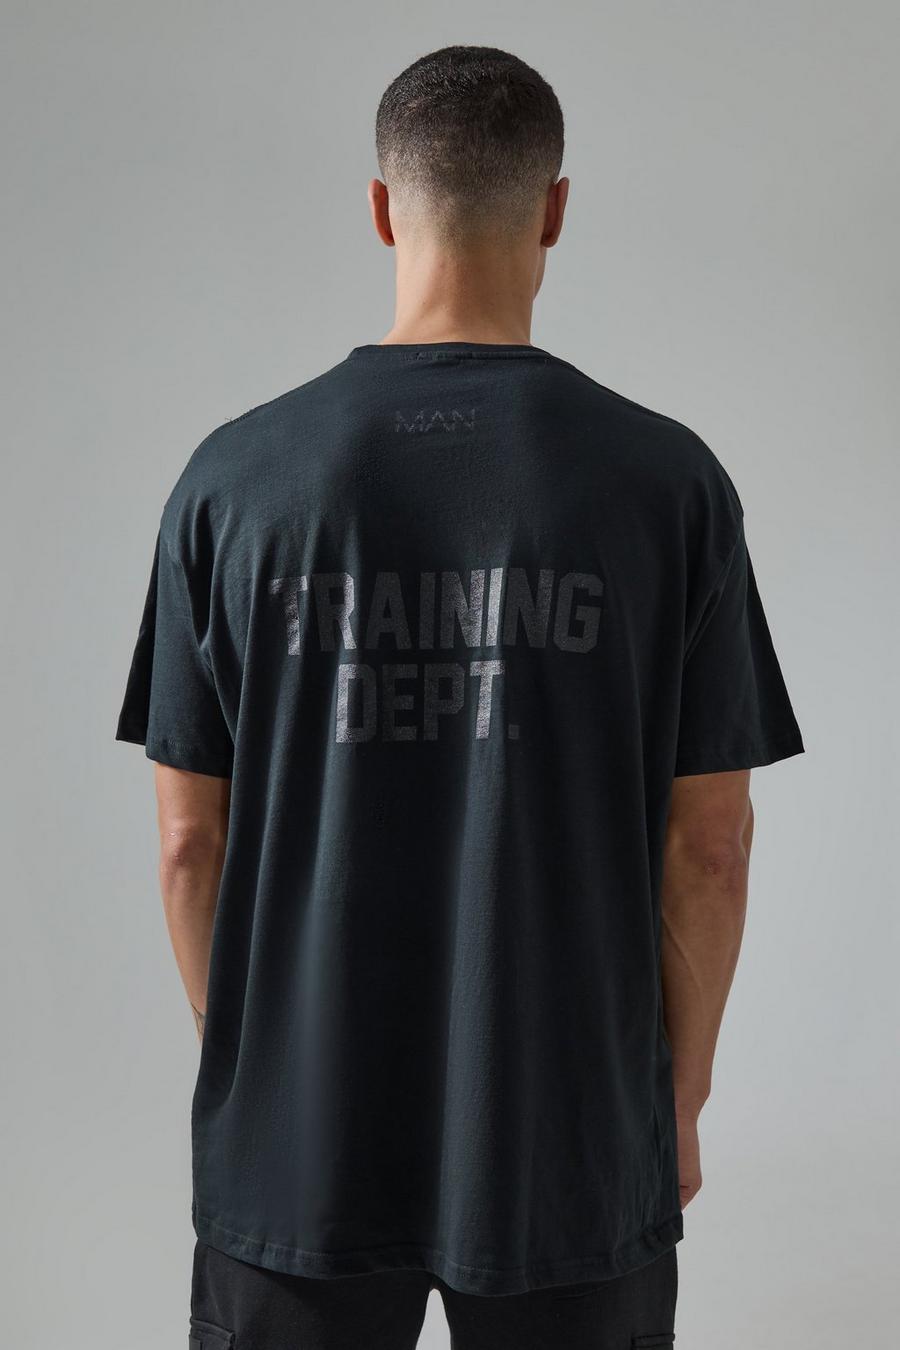 T-shirt oversize Active Training Dept, Black image number 1